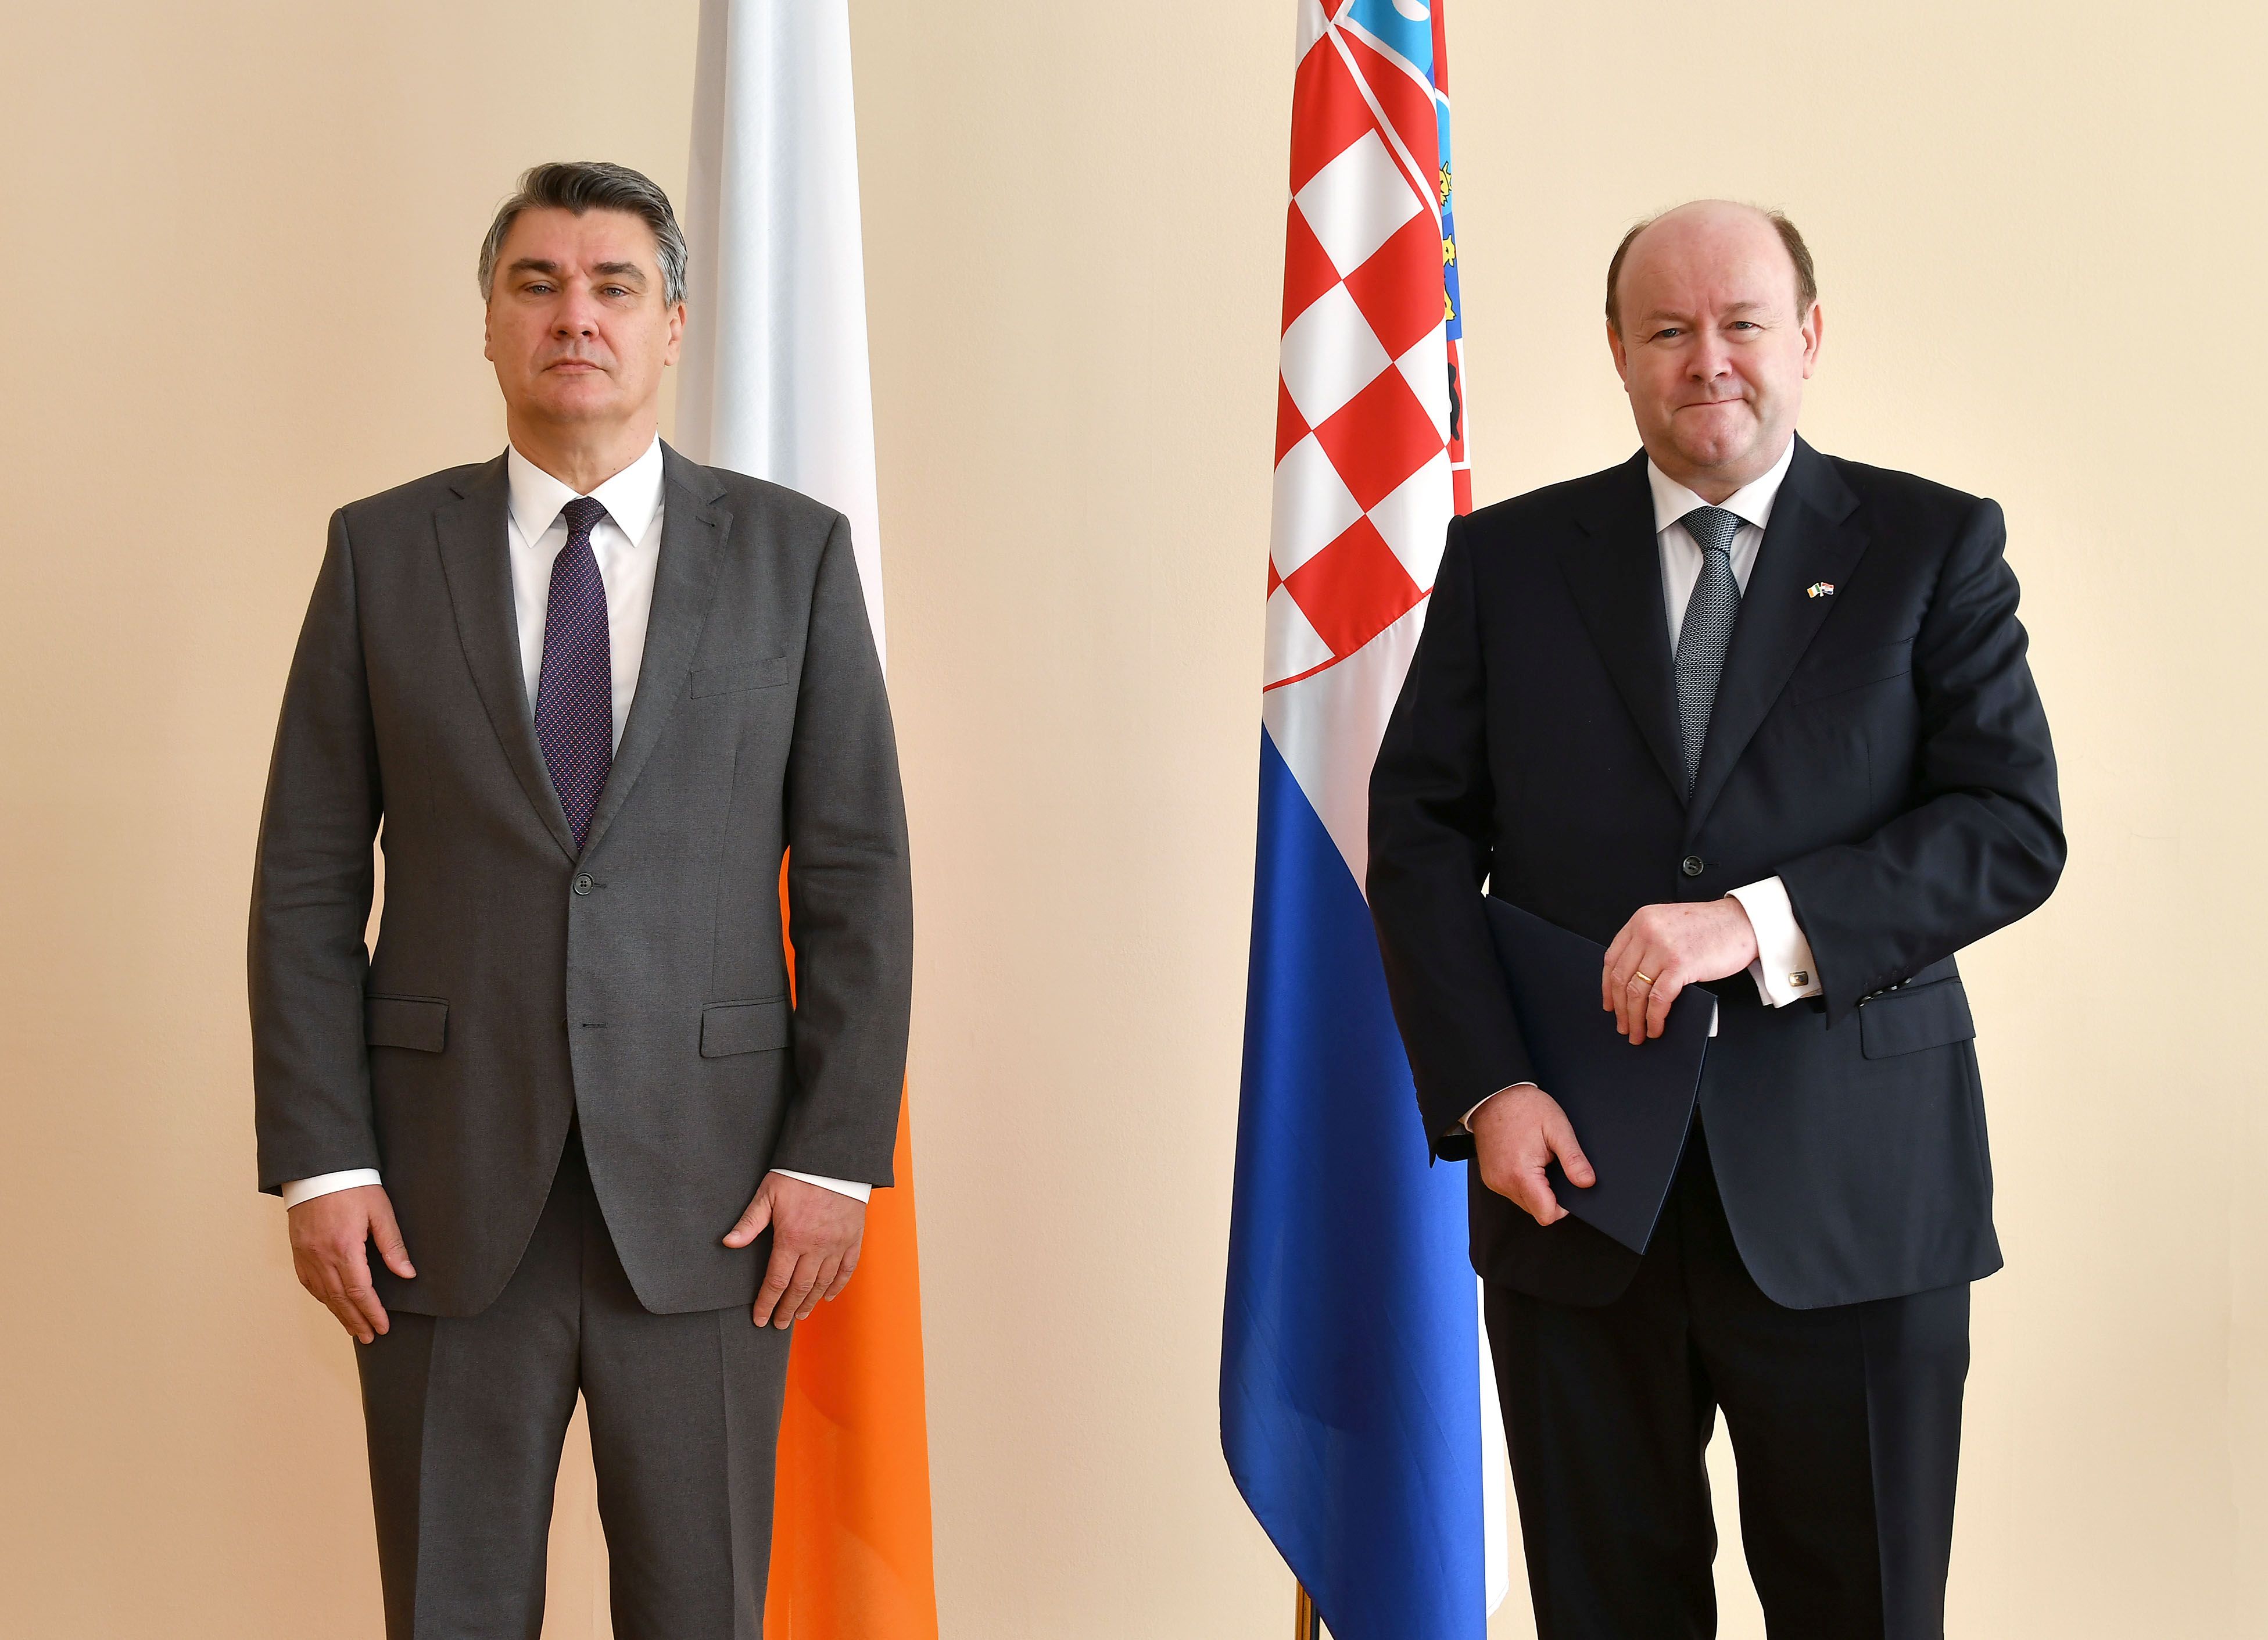 Ambassador Dowling presents credentials to Croatian President